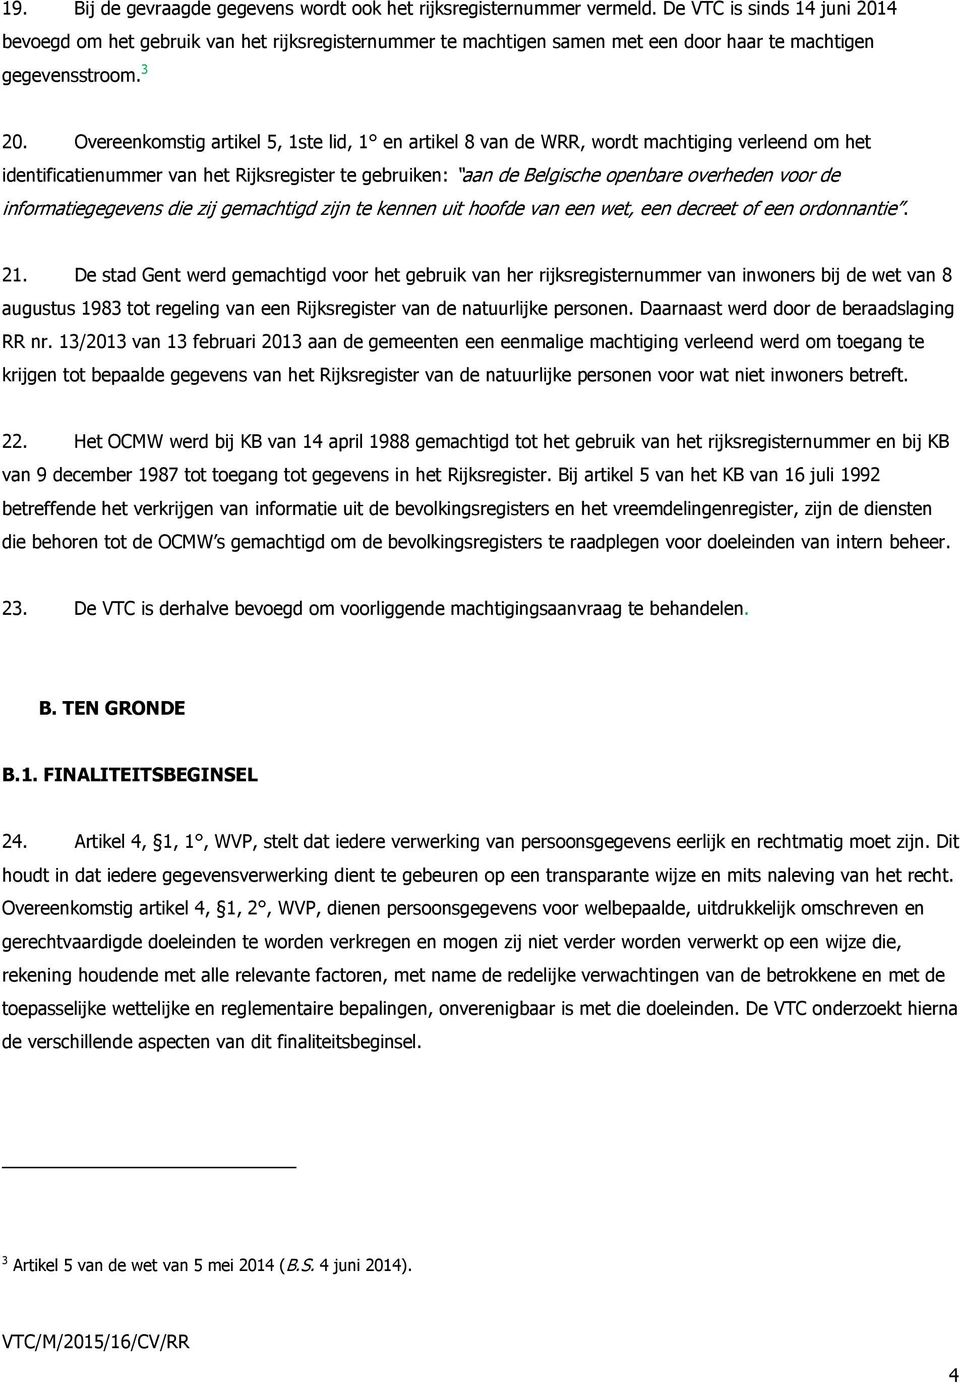 Overeenkomstig artikel 5, 1ste lid, 1 en artikel 8 van de WRR, wordt machtiging verleend om het identificatienummer van het Rijksregister te gebruiken: aan de Belgische openbare overheden voor de